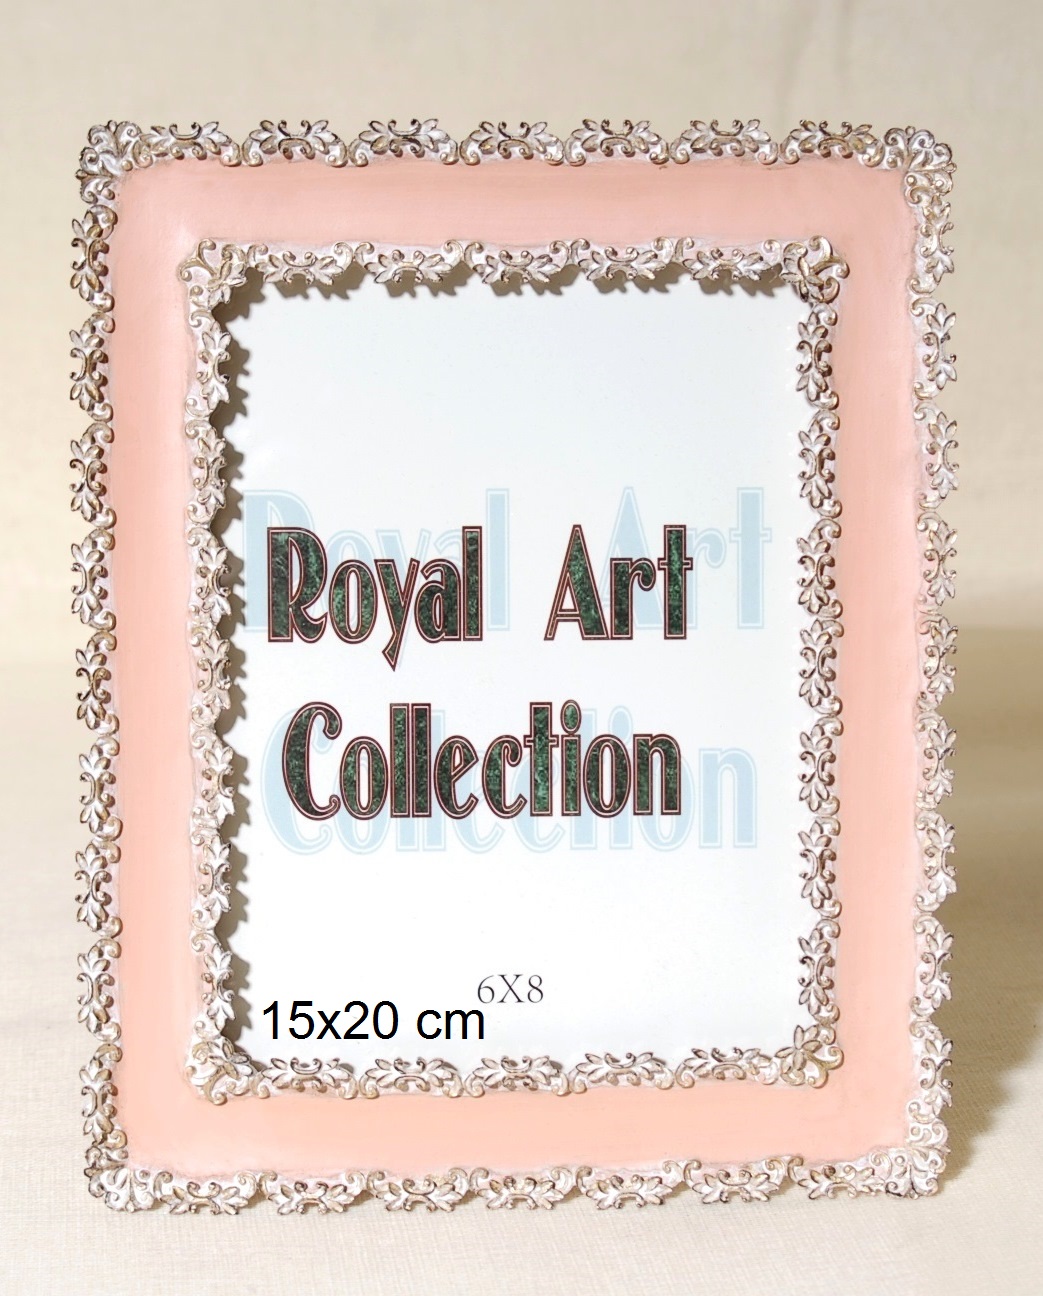 Κορνίζα Πολυεστερική Royal Art 15x20εκ. YUA3/327/68P (Χρώμα: Ροζ, Υλικό: Πολυεστερικό) - Royal Art Collection - YUA3/327/68P 112278